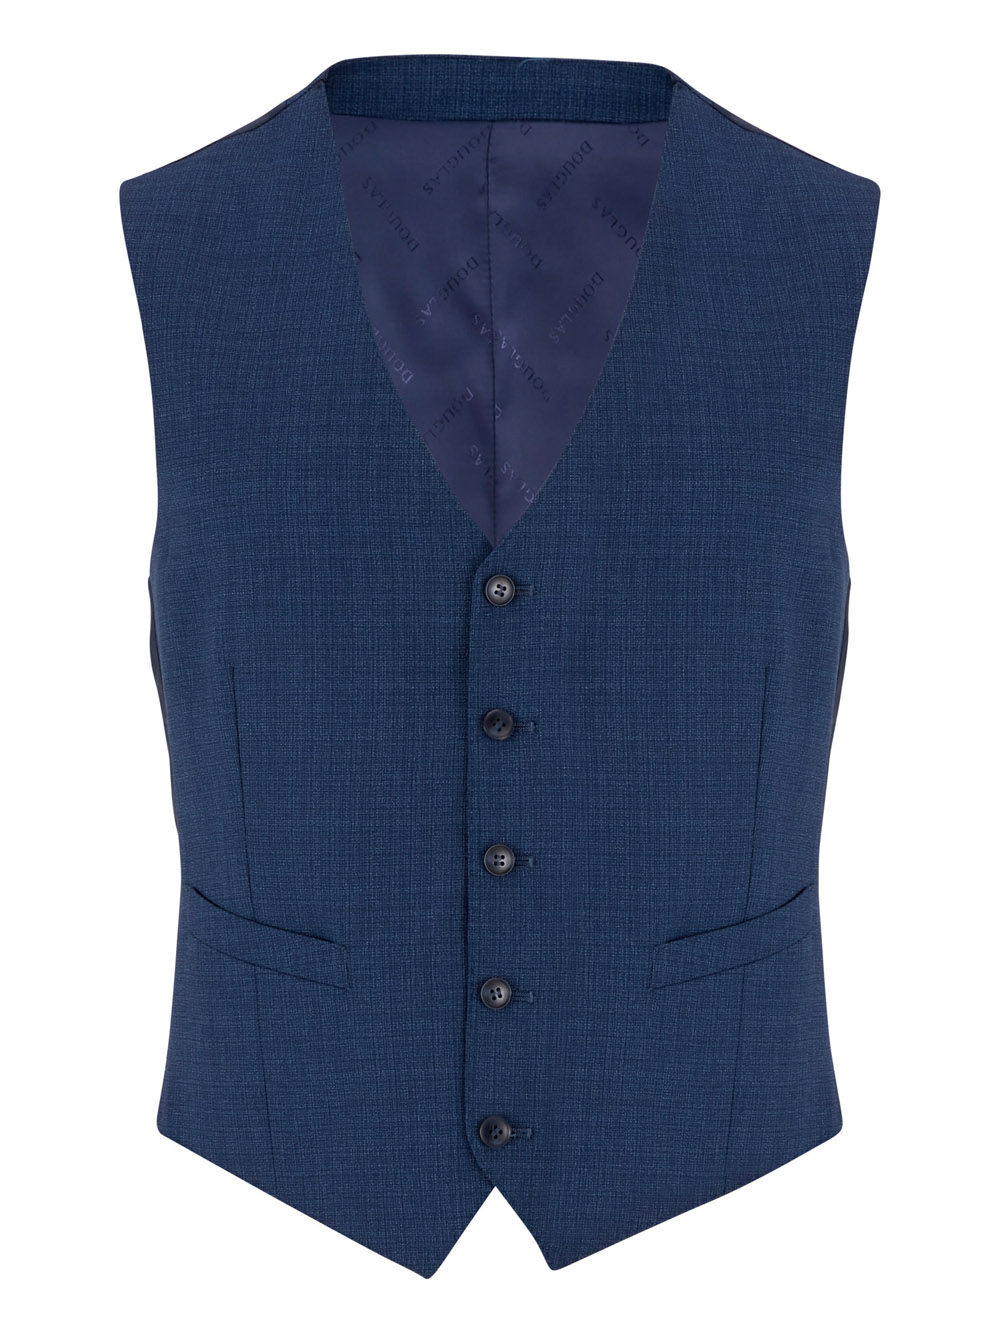 Douglas Blue Romelo Mix + Match Suit Waistcoat